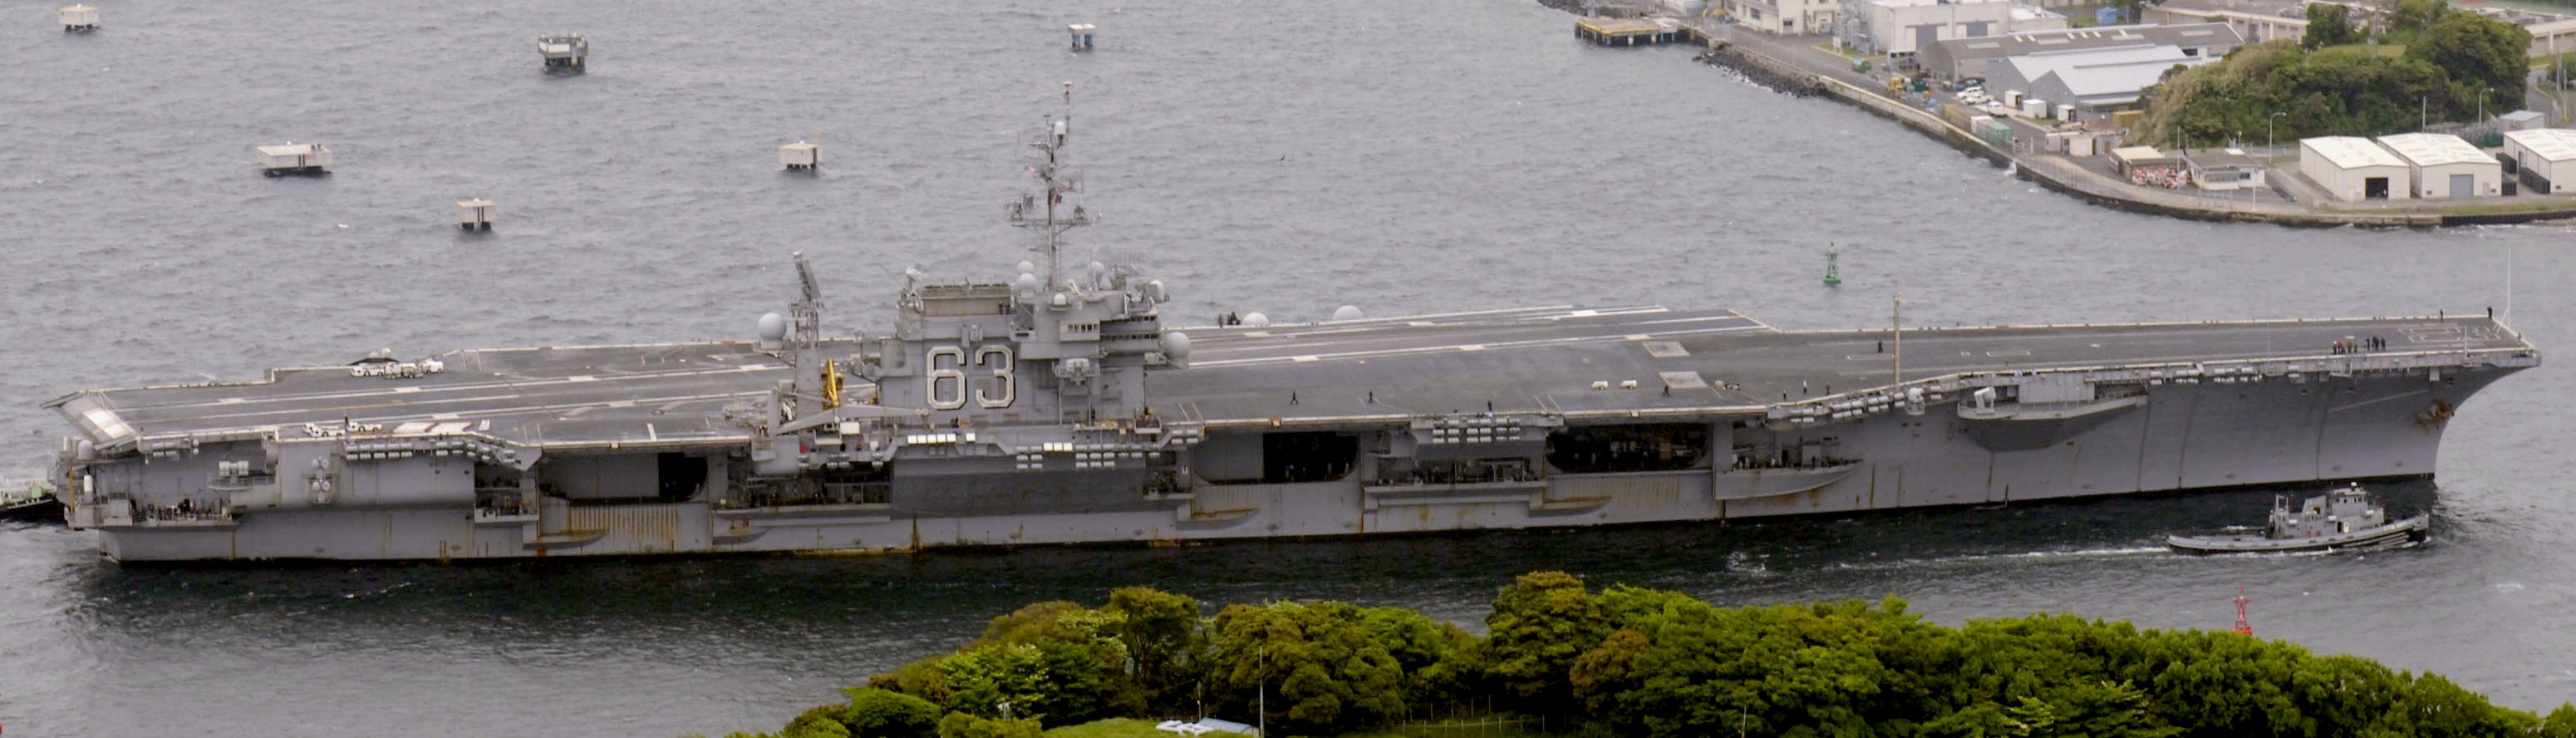 cv-63 uss kitty hawk aircraft carrier us navy 51